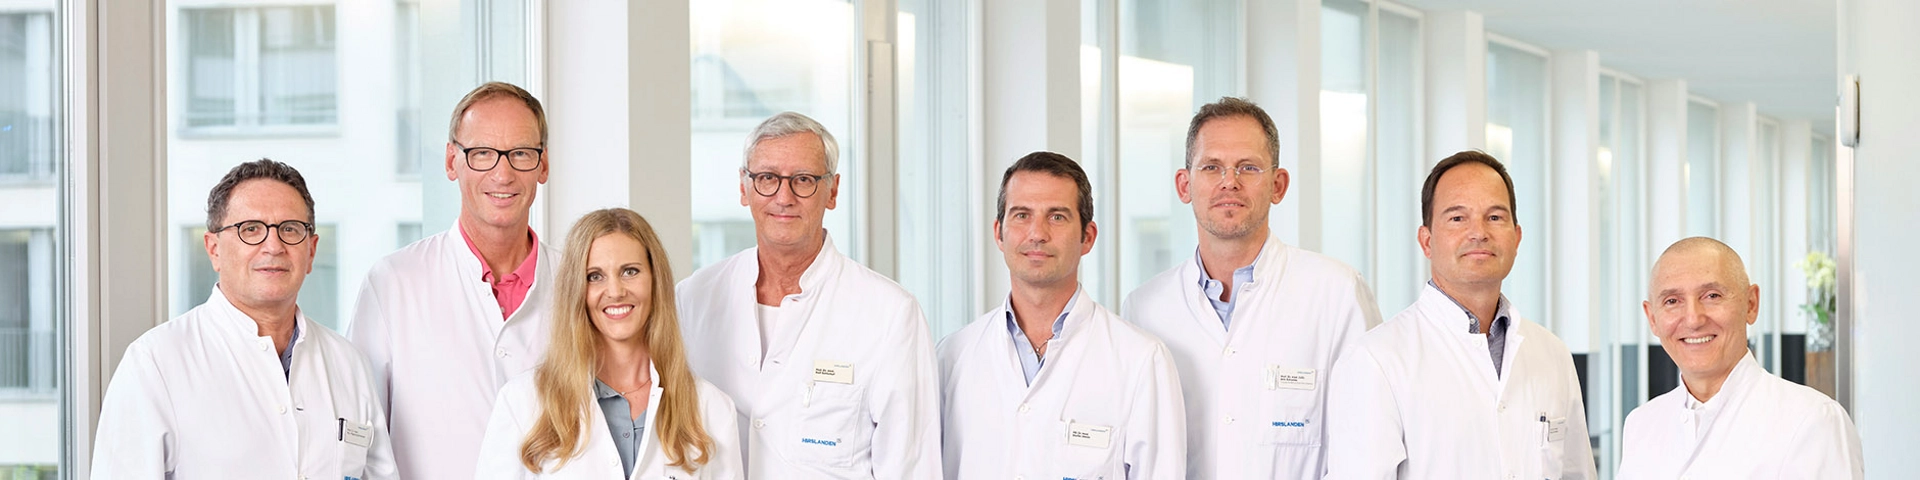  rzte allgemeinchirurgie verdauungssystem zurich Chirurgisches Zentrum Zürich - Standort Klinik Hirslanden